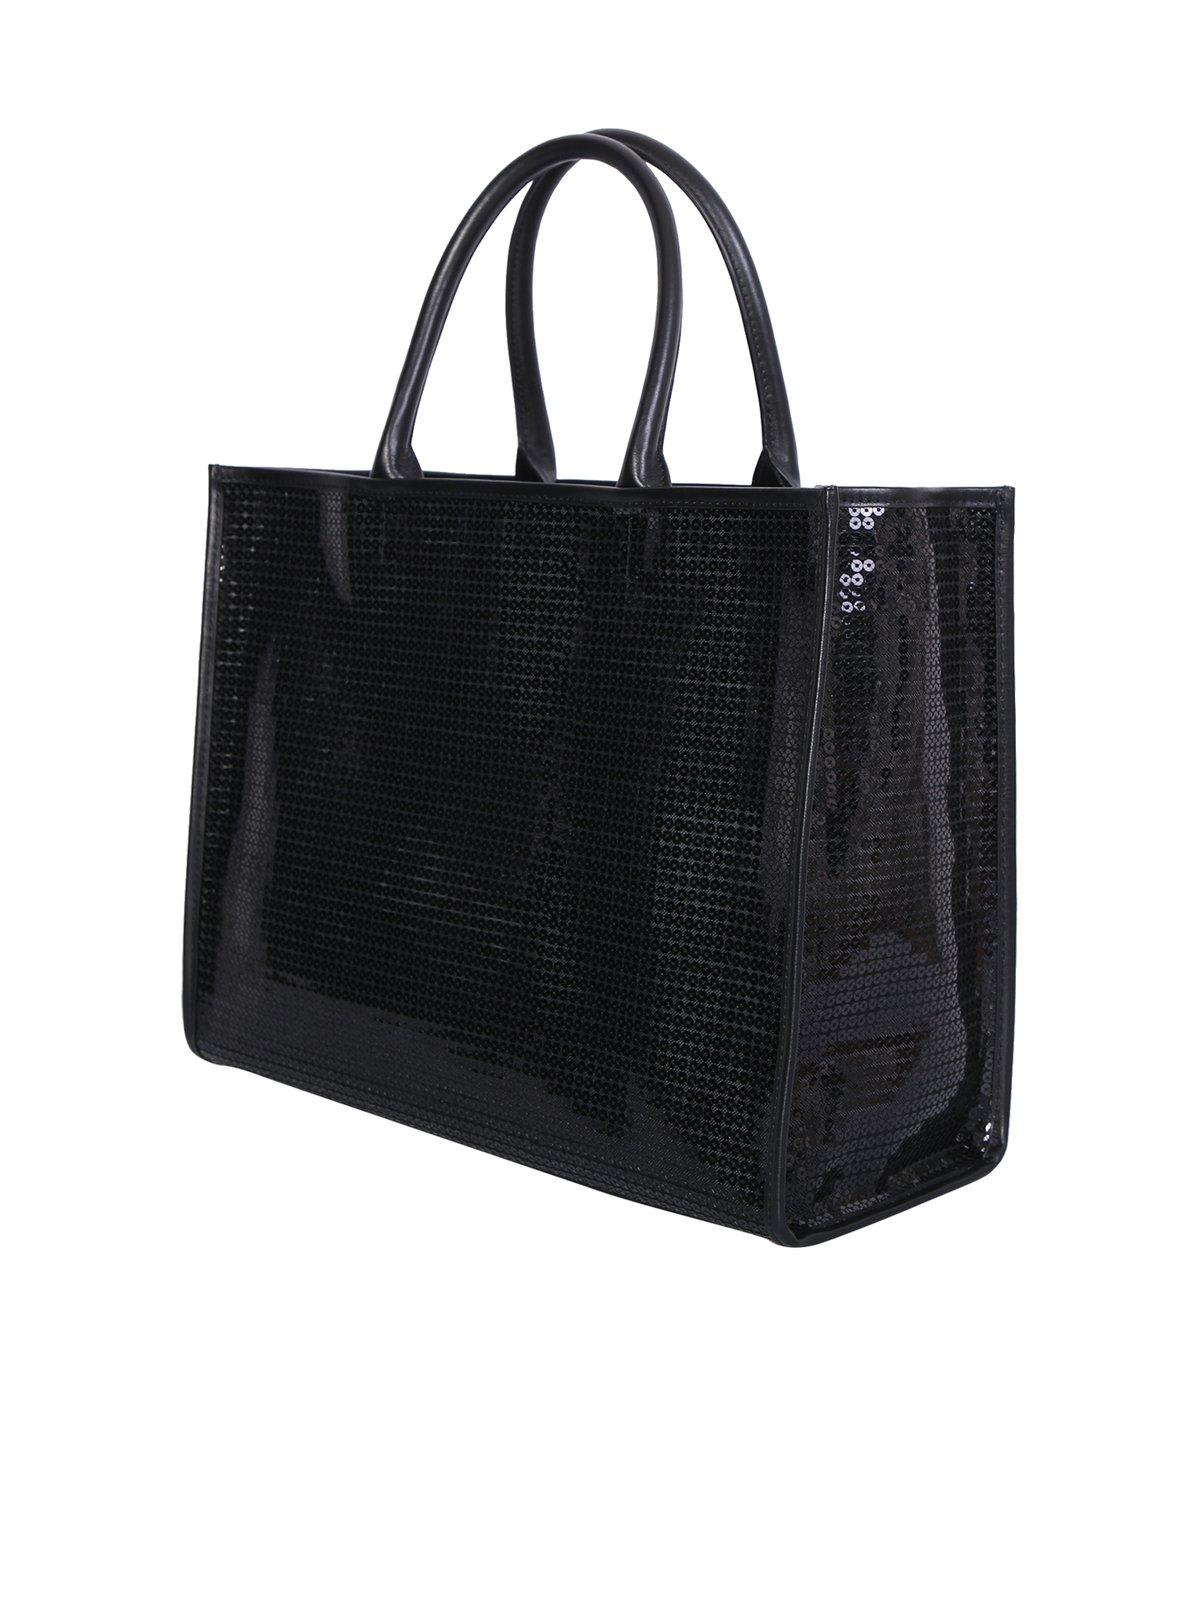 Furla Sequin Embellished Logo Tote Bag In Black | ModeSens